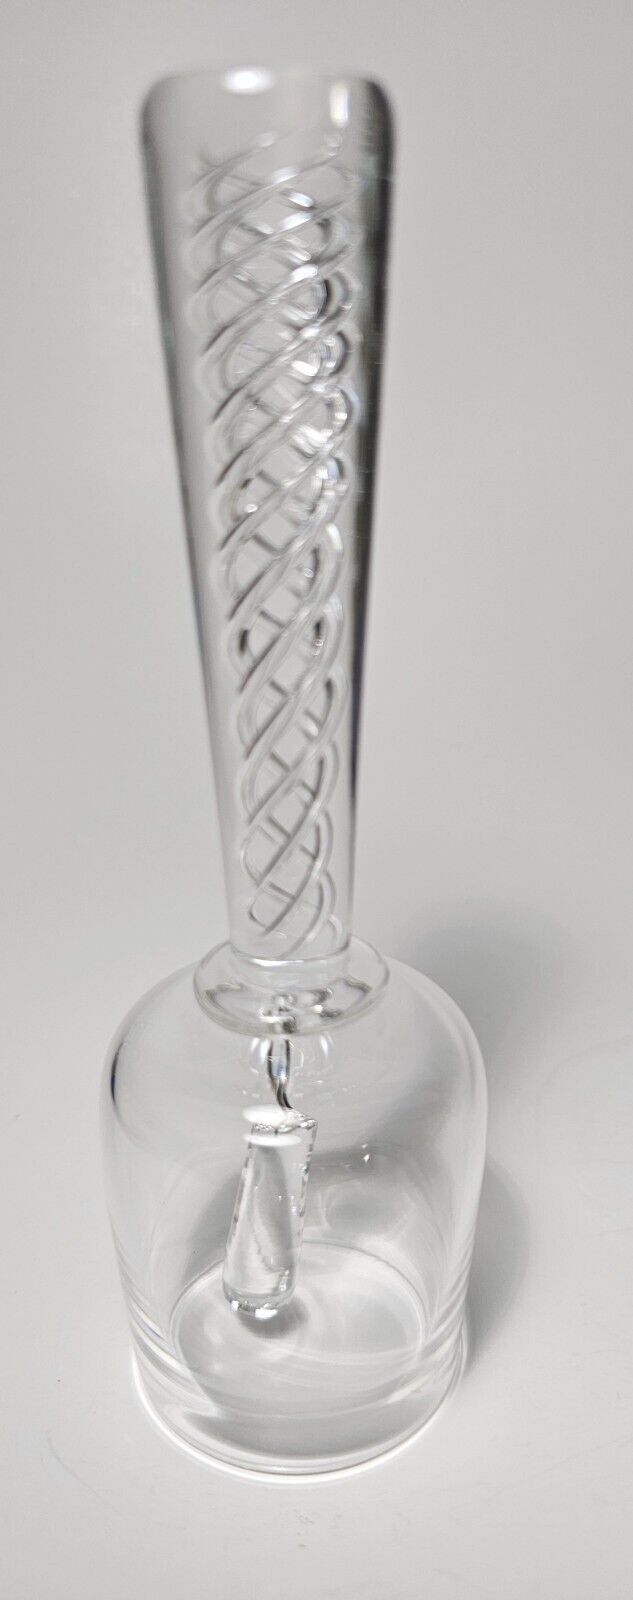 Glass Bell - Steuben Art Glass Air Twist Dinner Table Bell